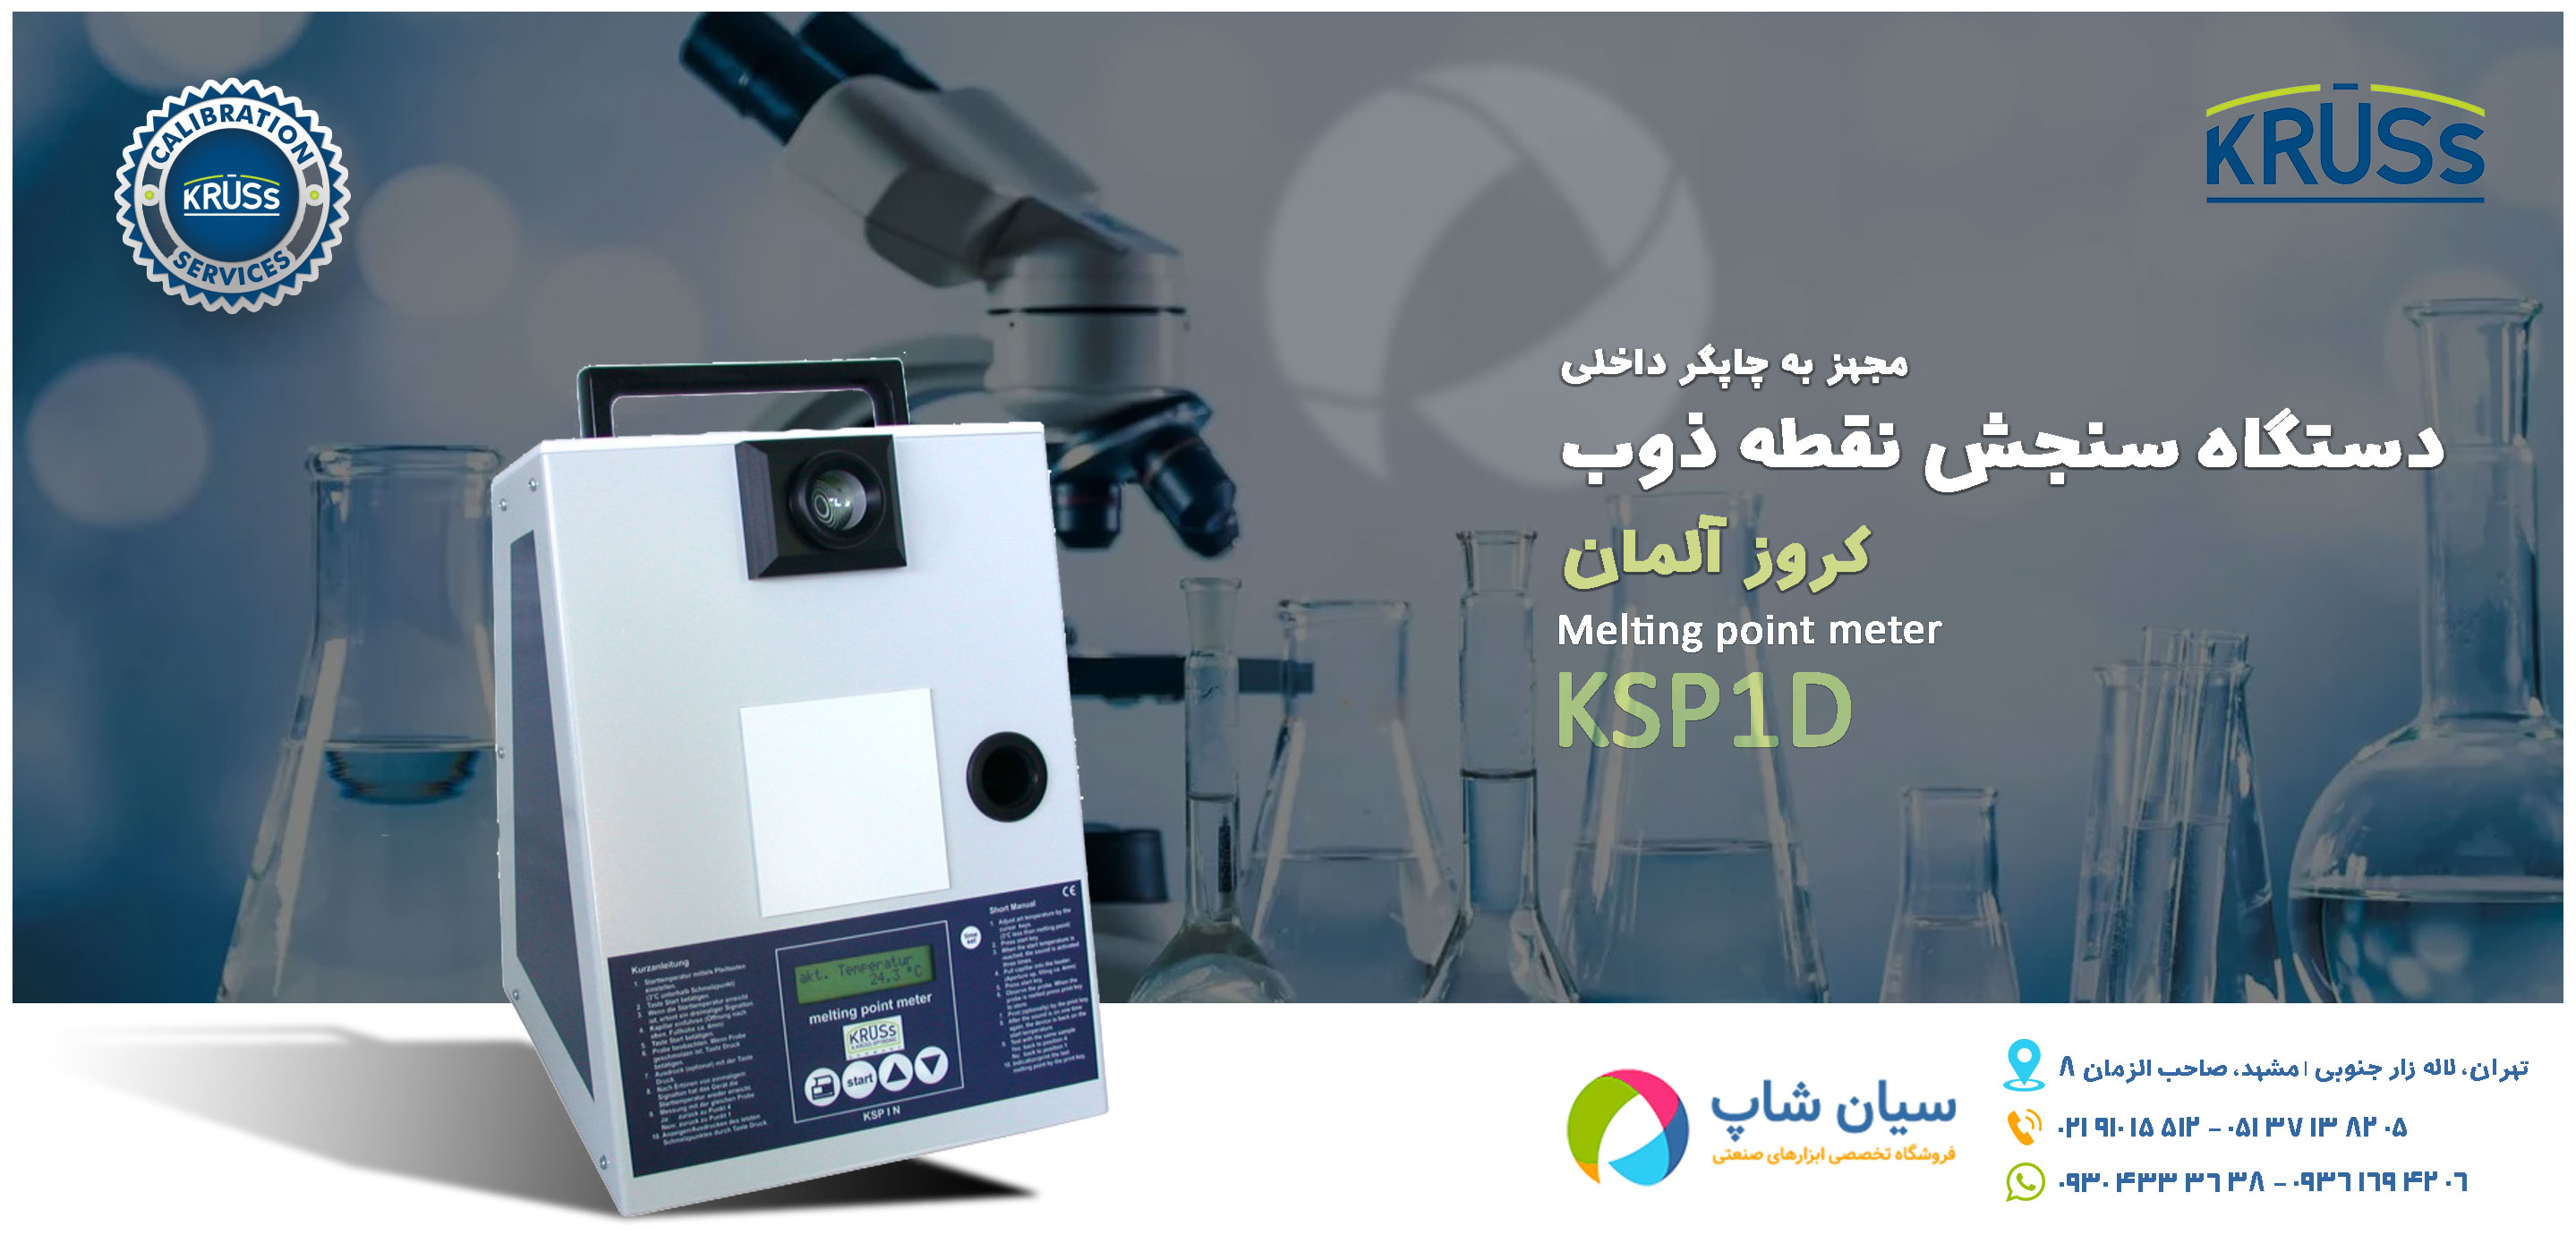 دستگاه تعیین نقطه ذوب کروز KRUSS KSP1D همراه با چاپگر داخلی